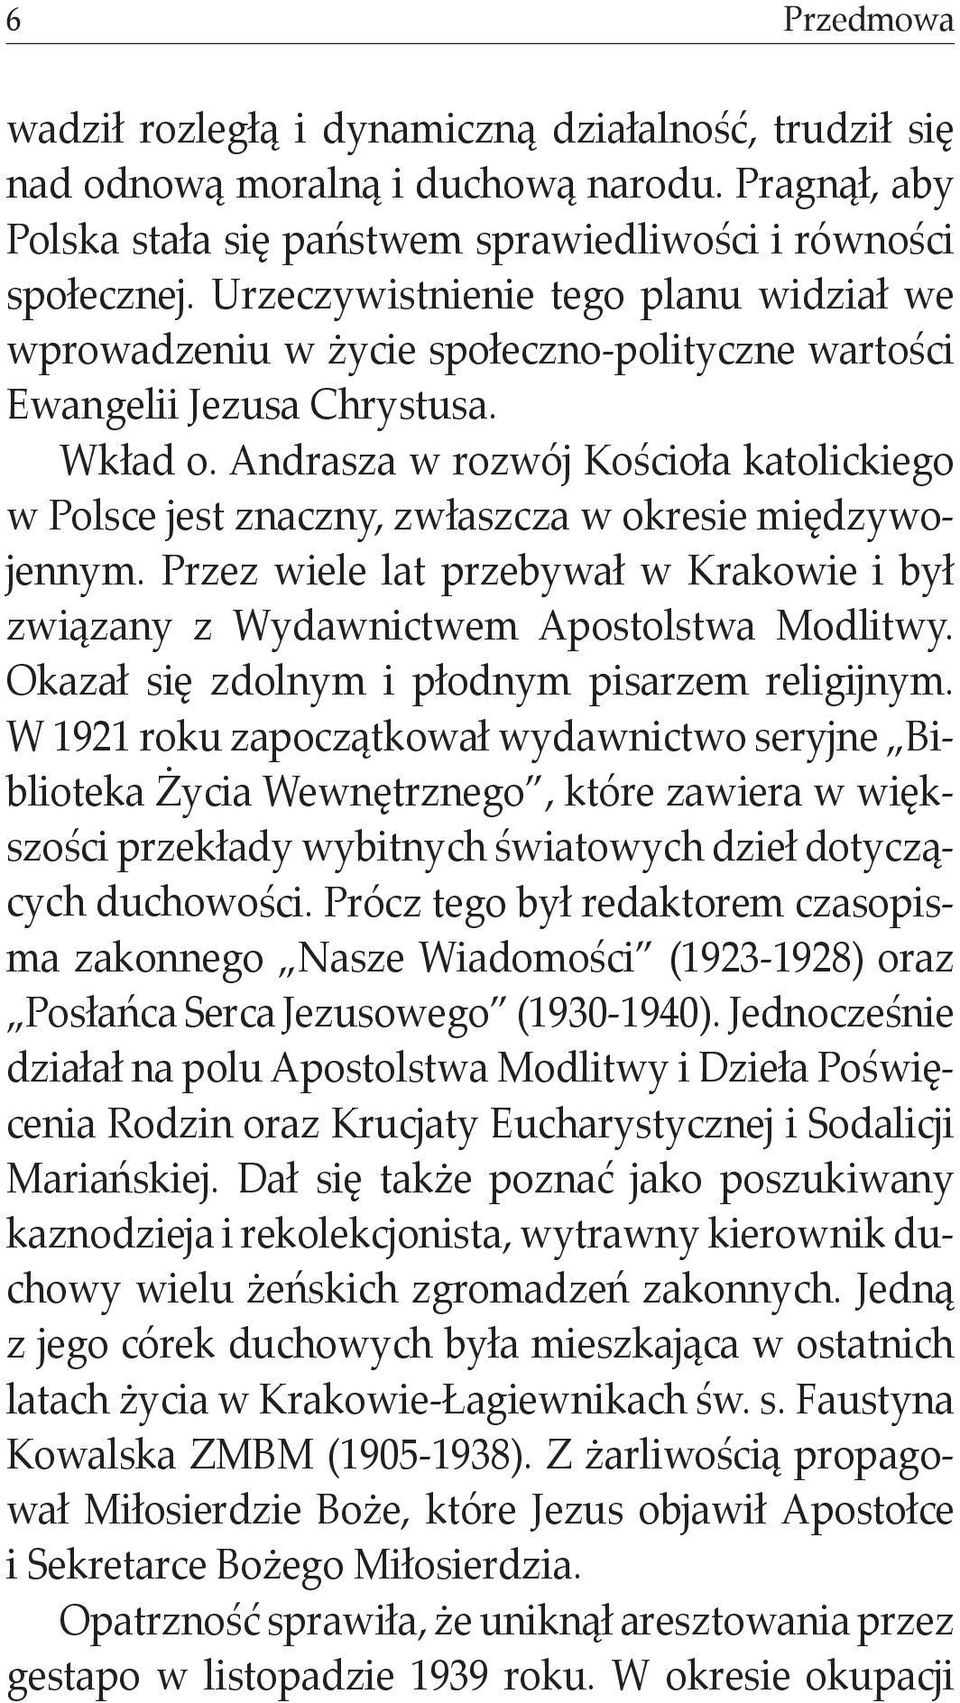 Andrasza w rozwój Kościoła katolickiego w Polsce jest znaczny, zwłaszcza w okresie międzywojennym. Przez wiele lat przebywał w Krakowie i był związany z Wydawnictwem Apostolstwa Modlitwy.